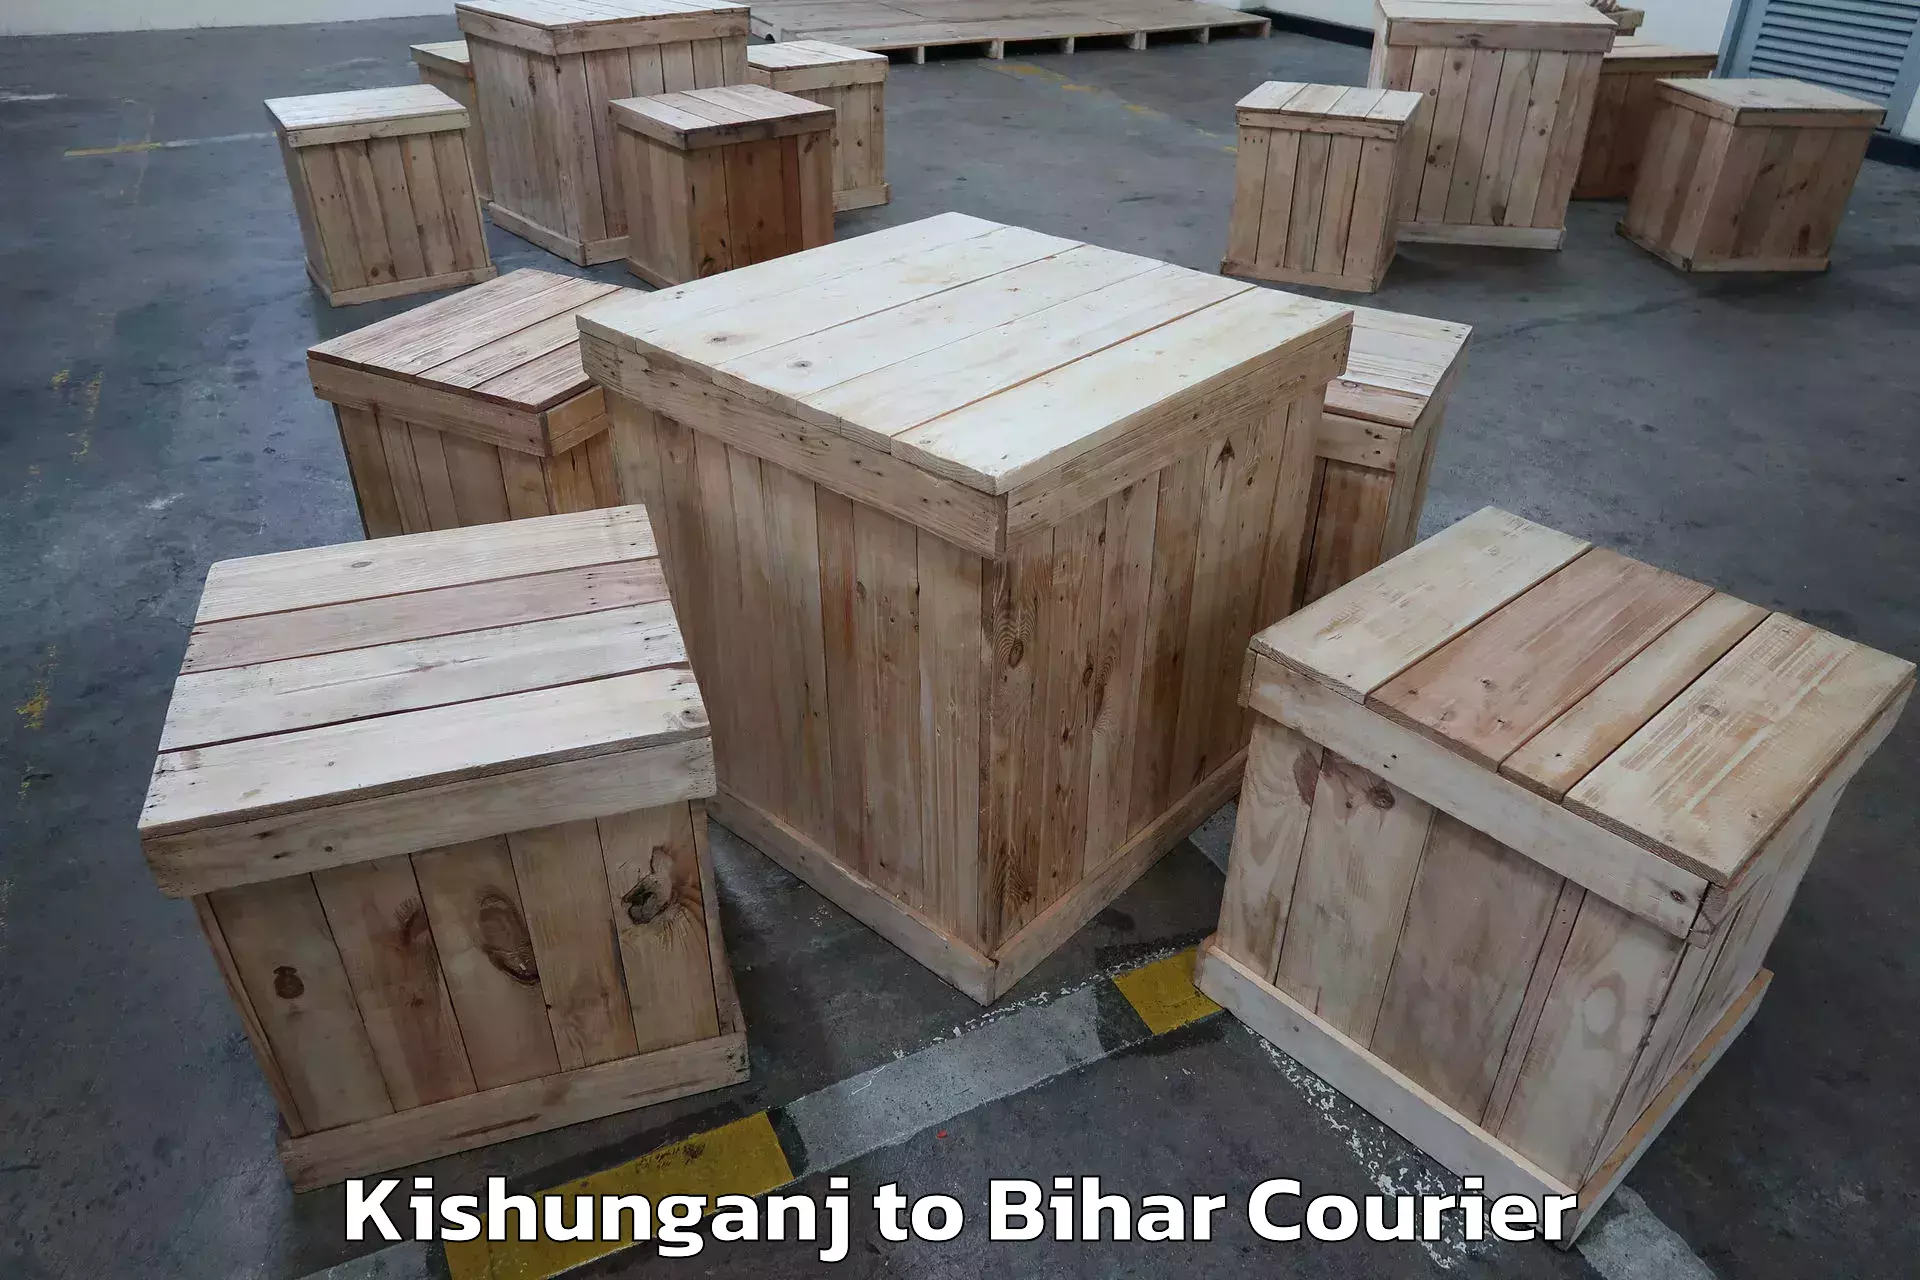 Furniture transport company Kishunganj to Bankipore